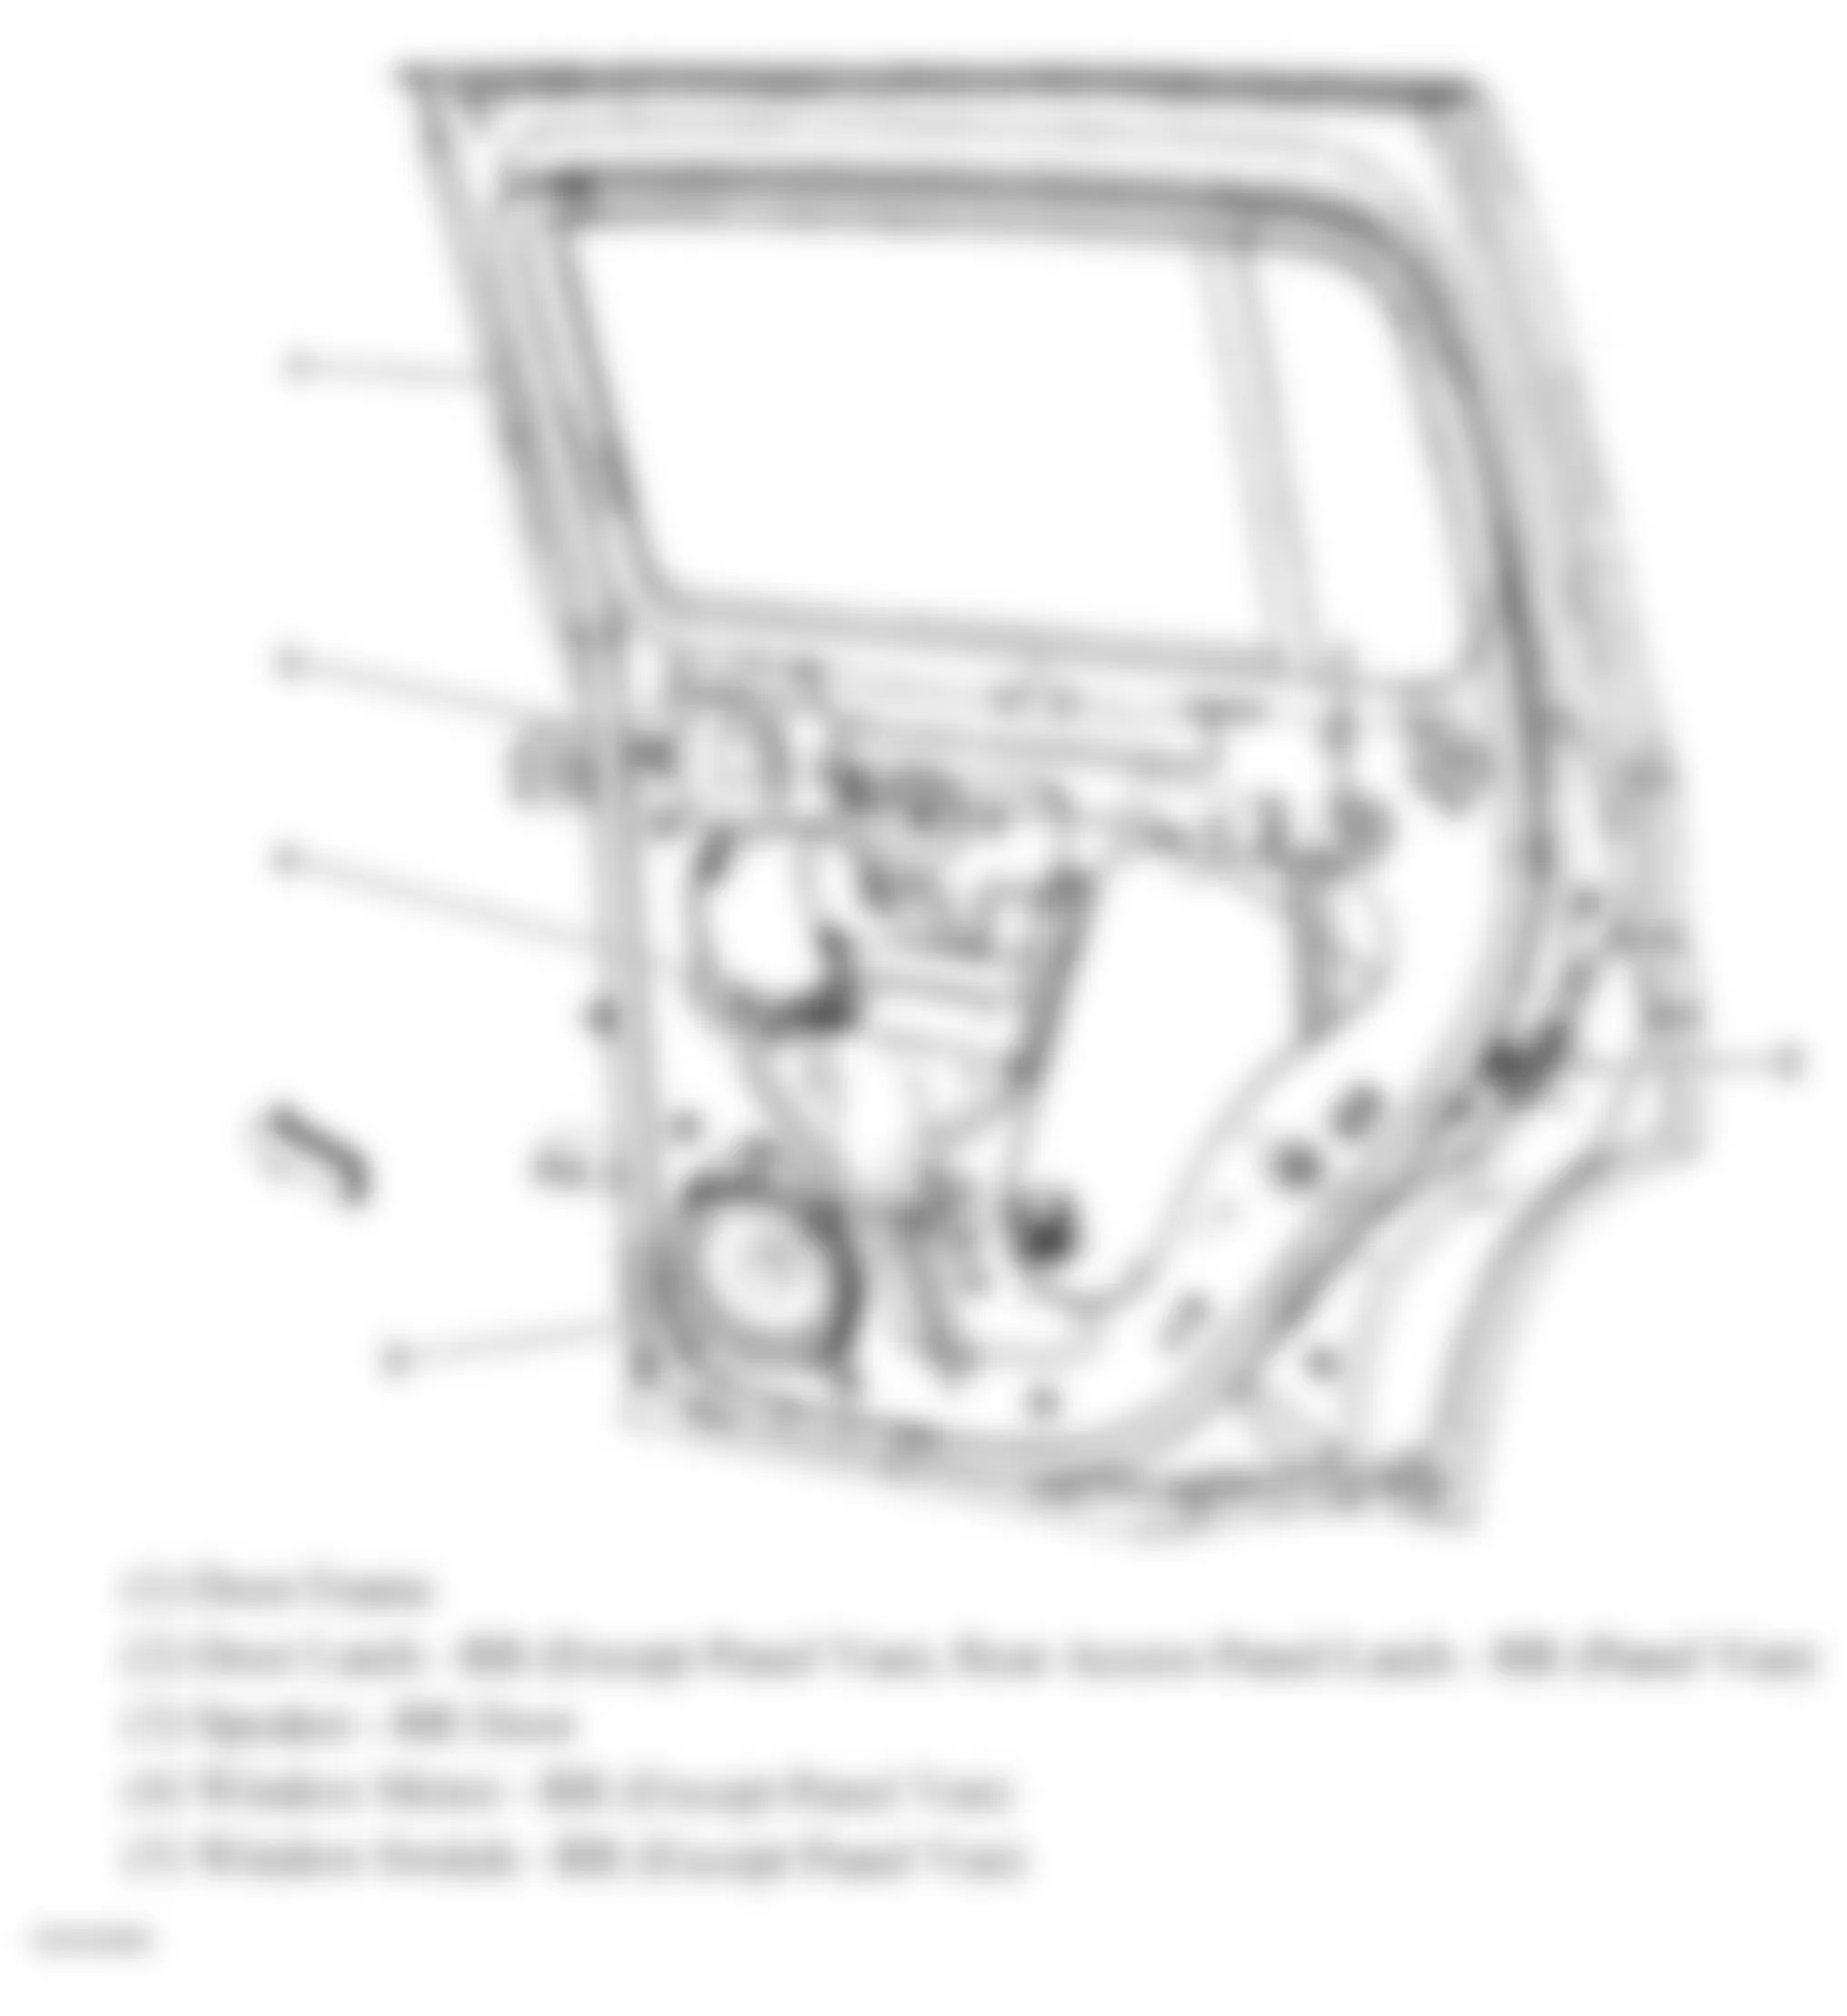 Chevrolet HHR LT 2010 - Component Locations -  Right Rear Door/Rear Access Panel